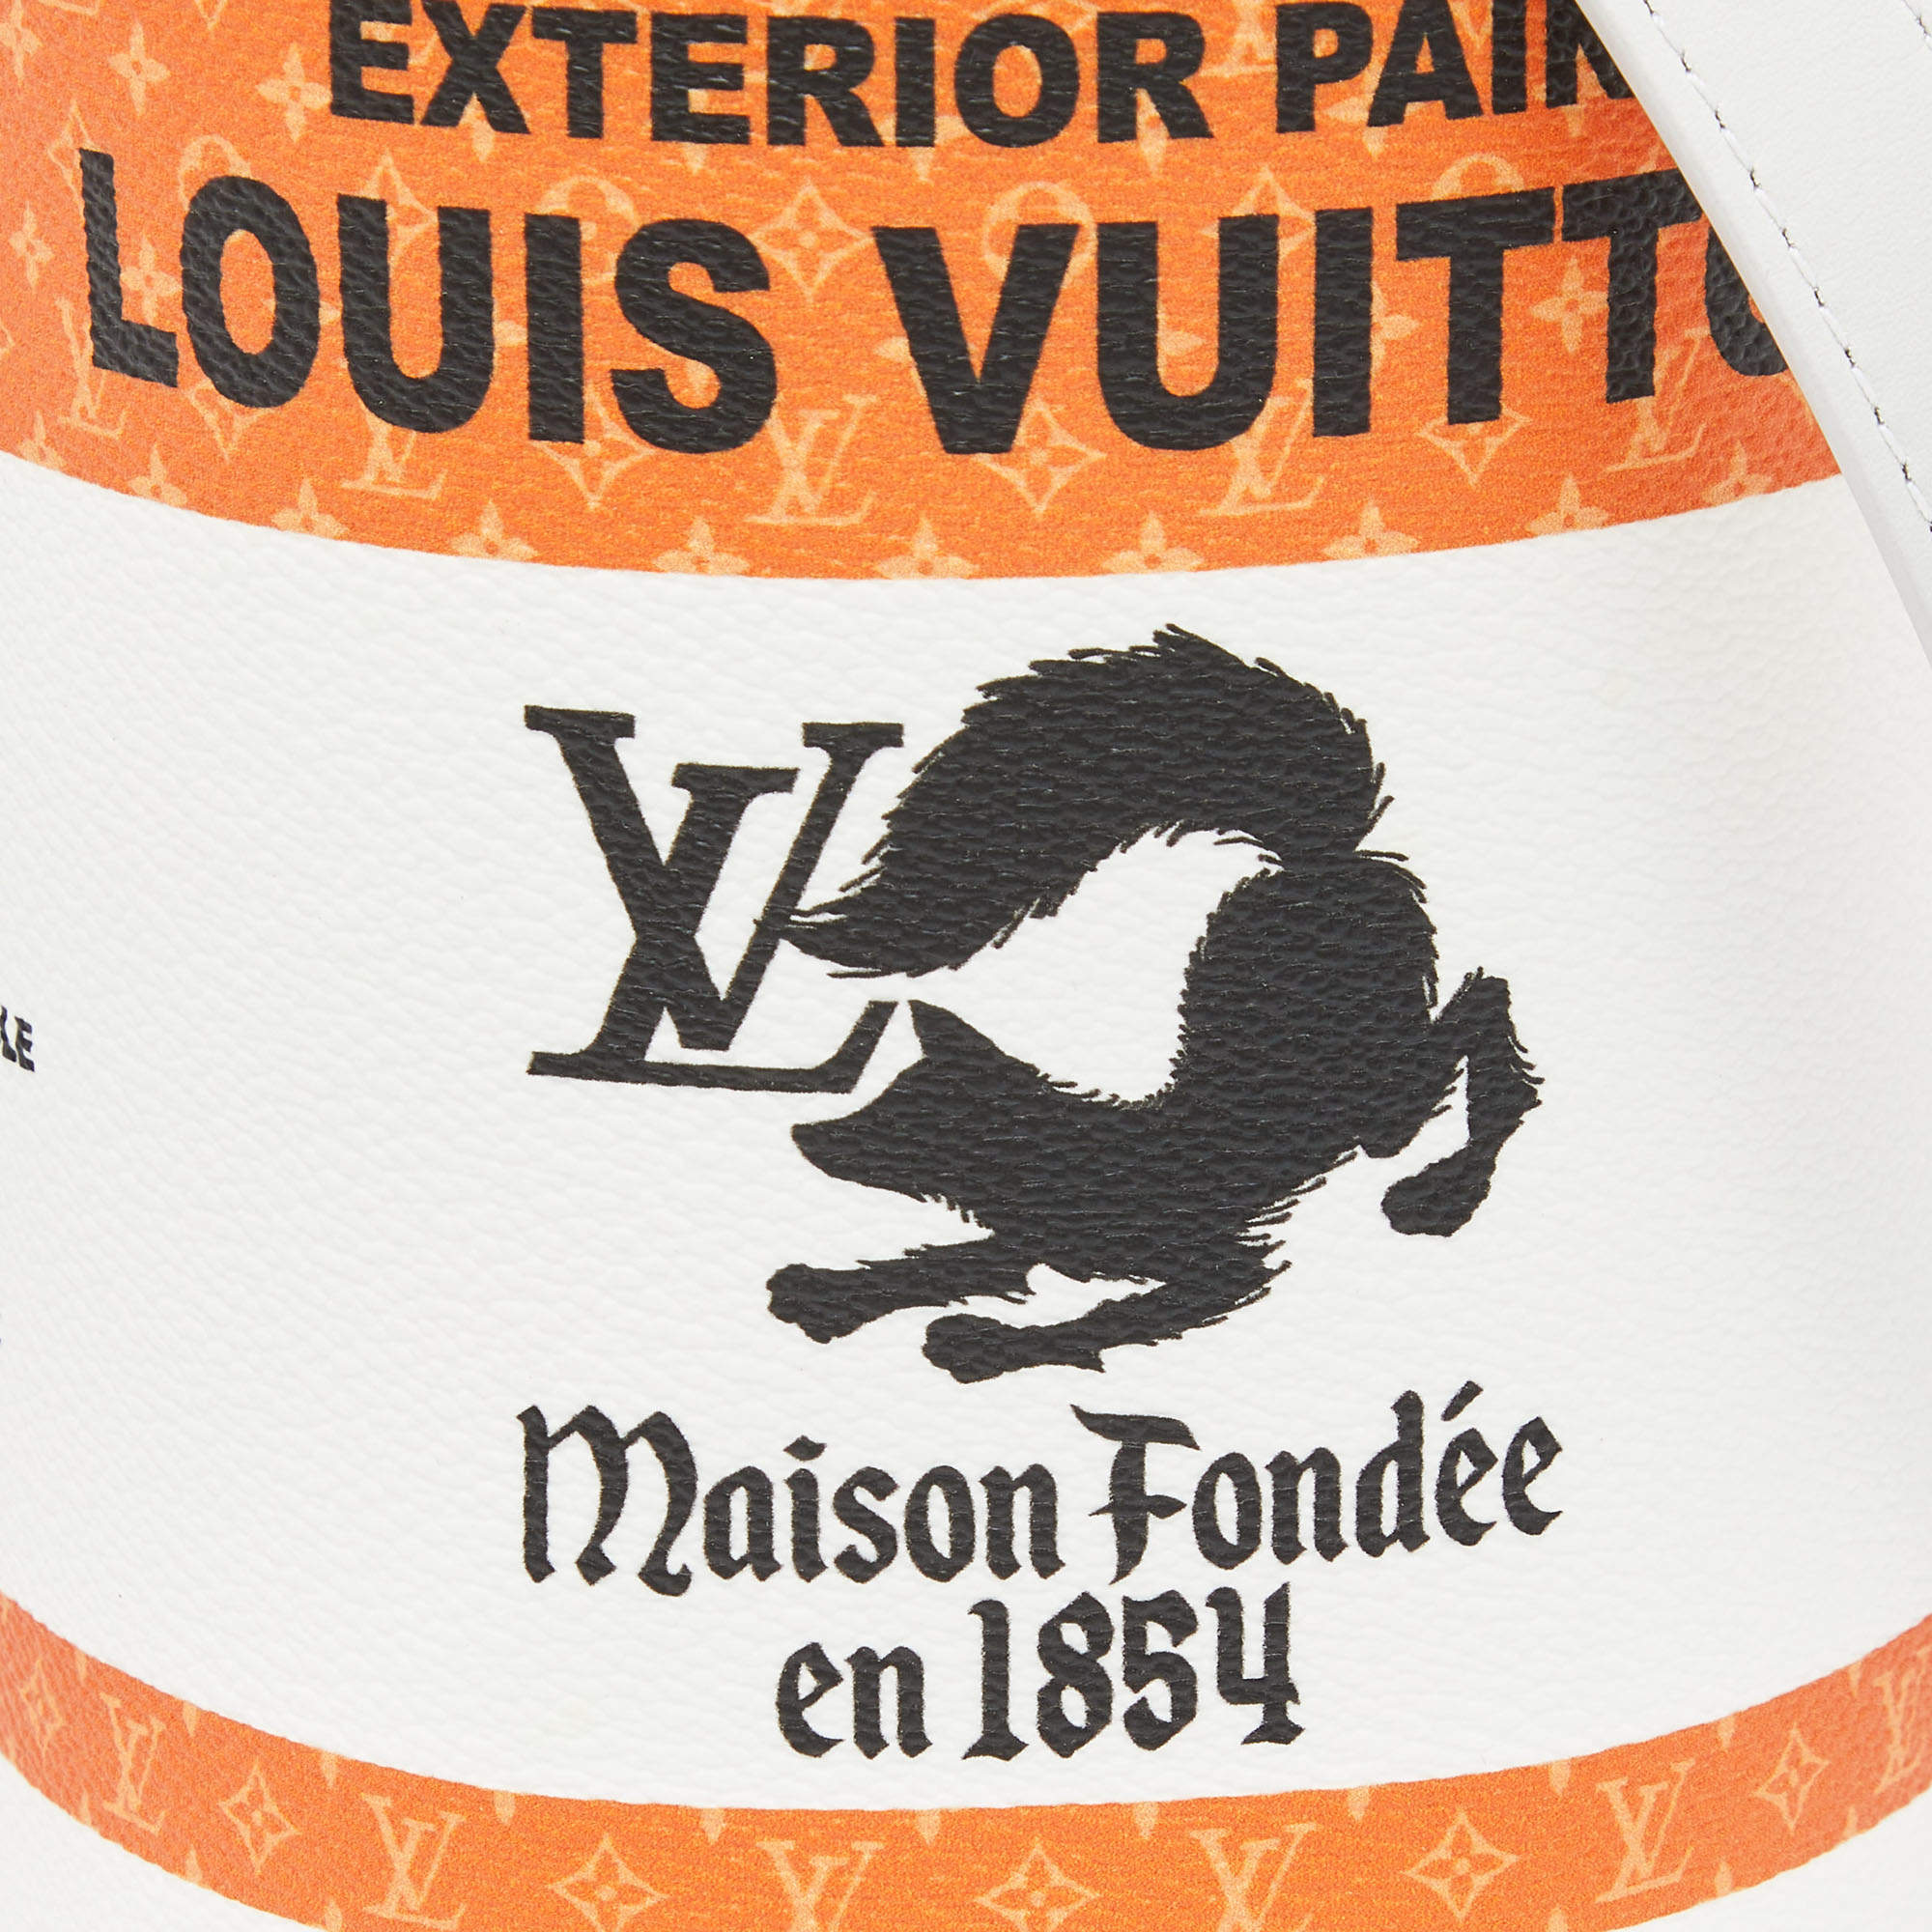 Louis Vuitton orange Paint Can Bucket Bag